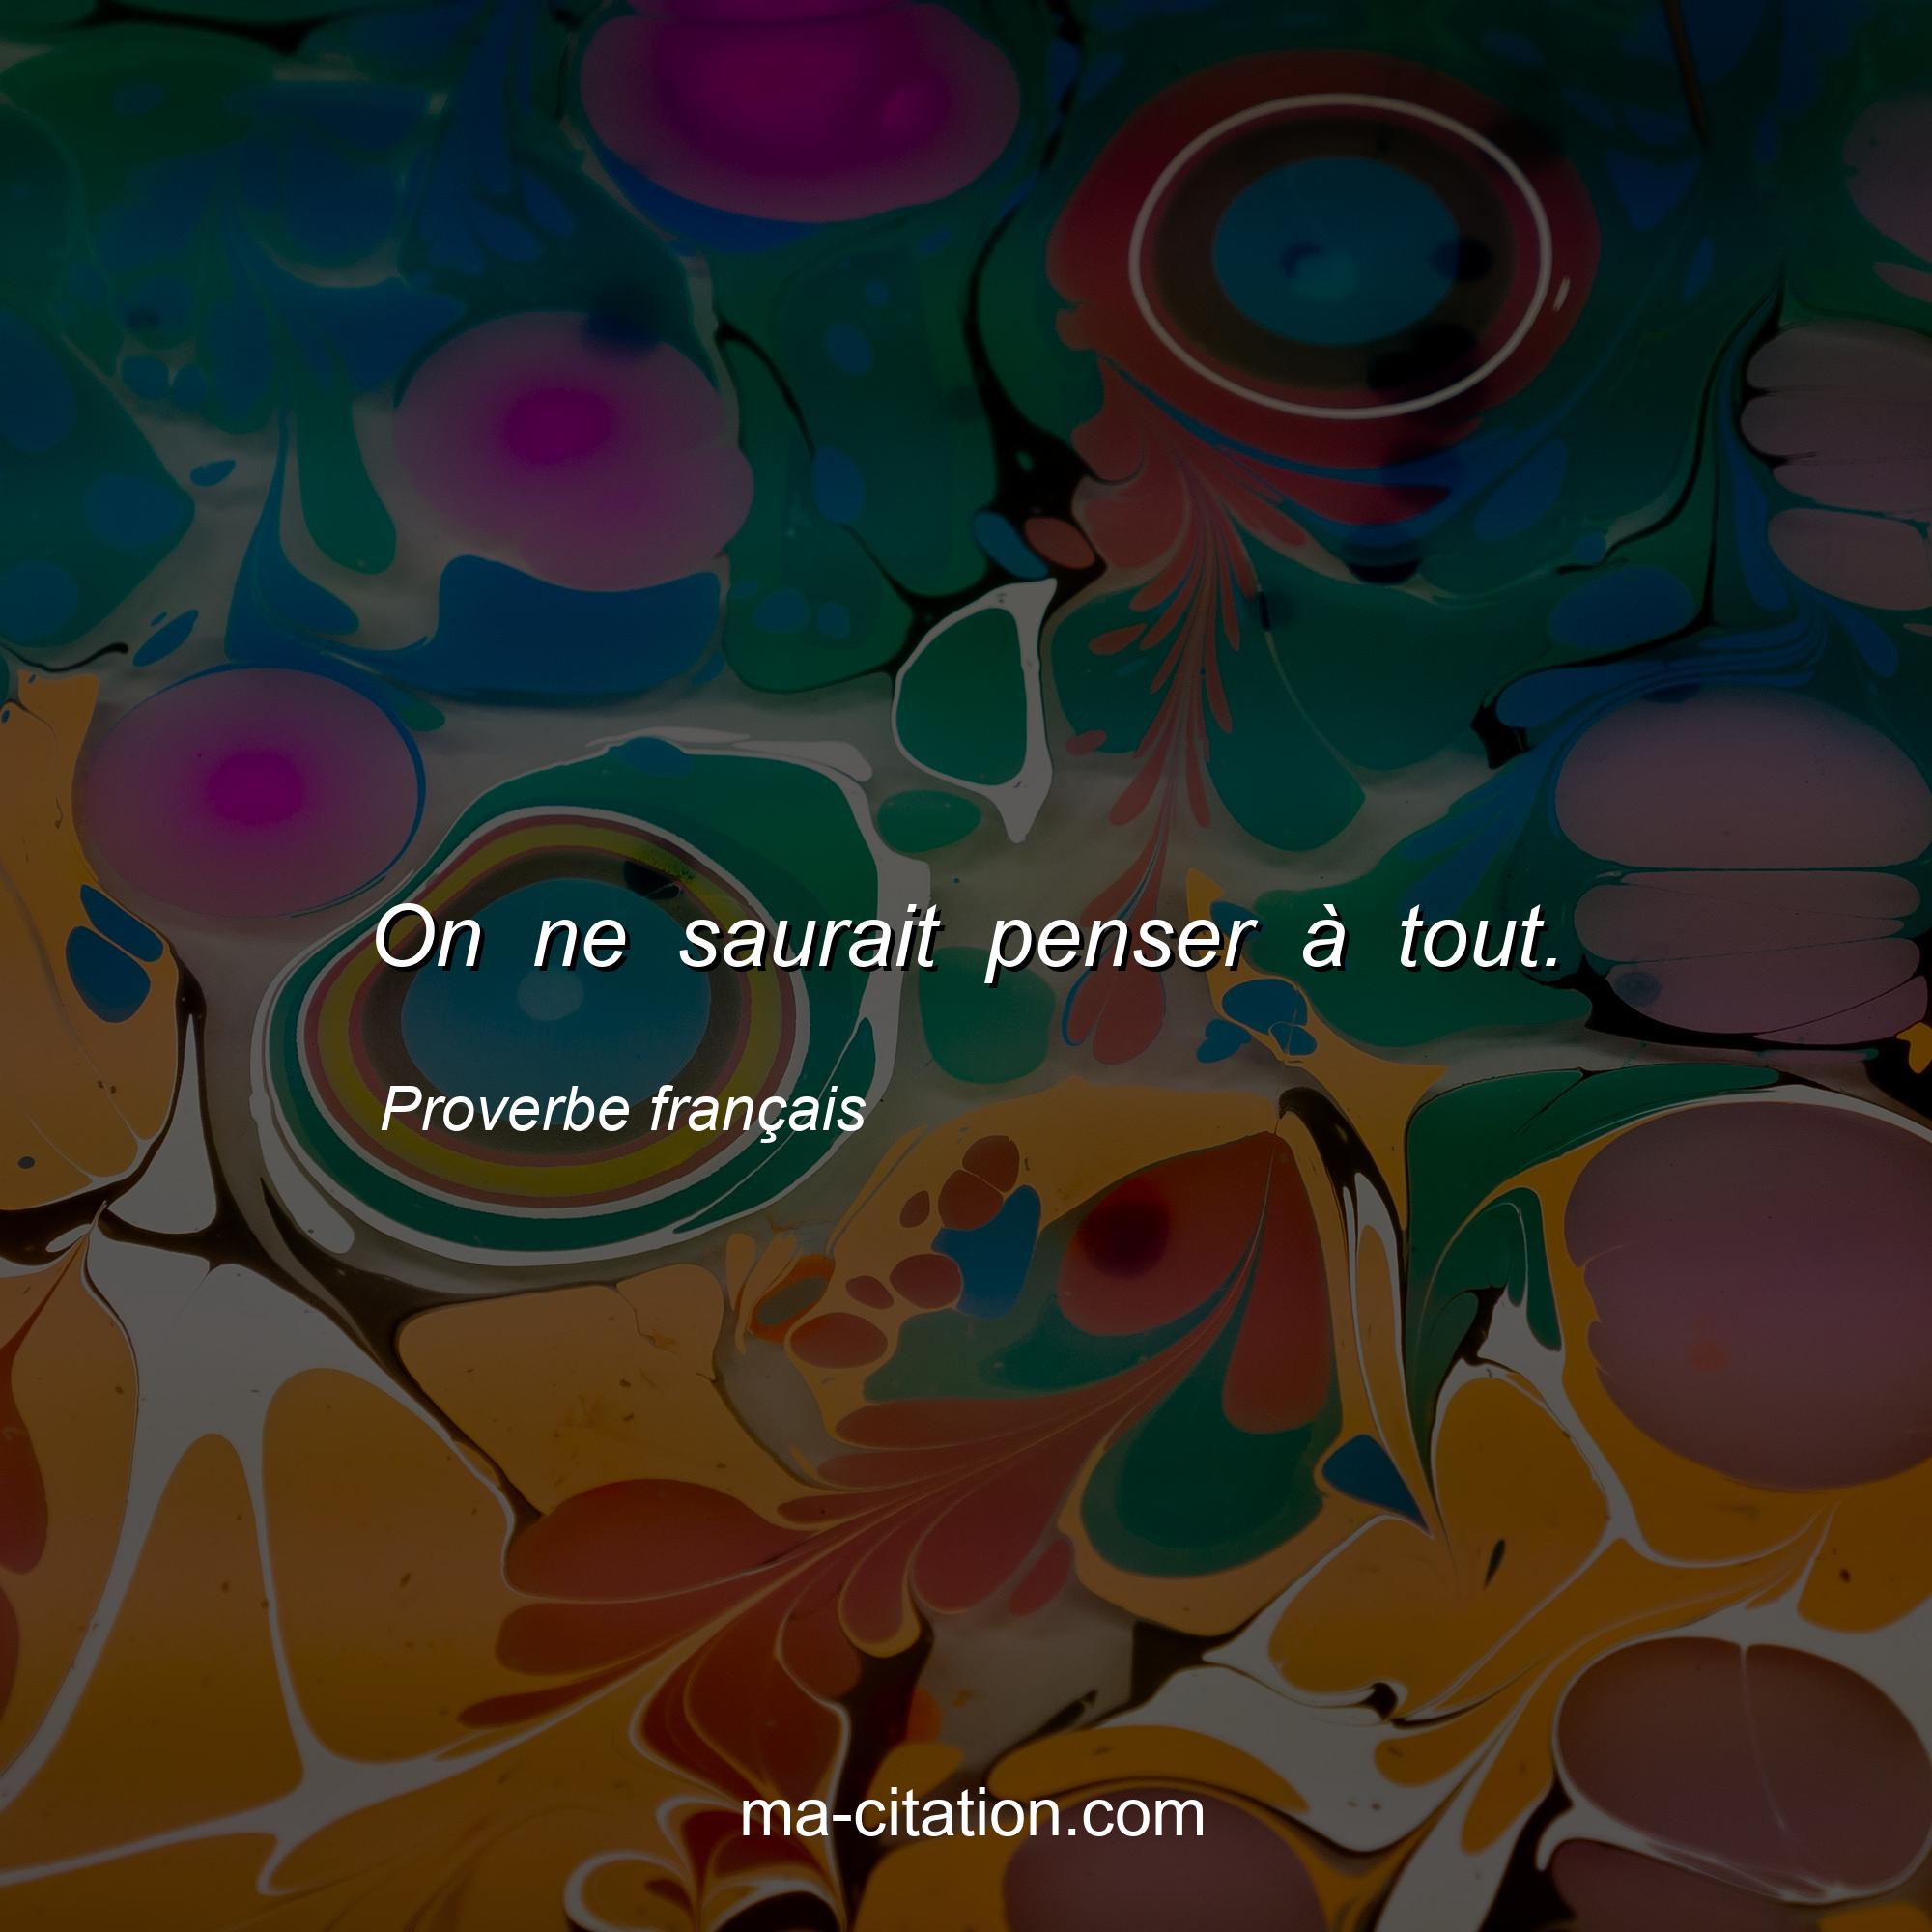 Proverbe français : On ne saurait penser à tout.